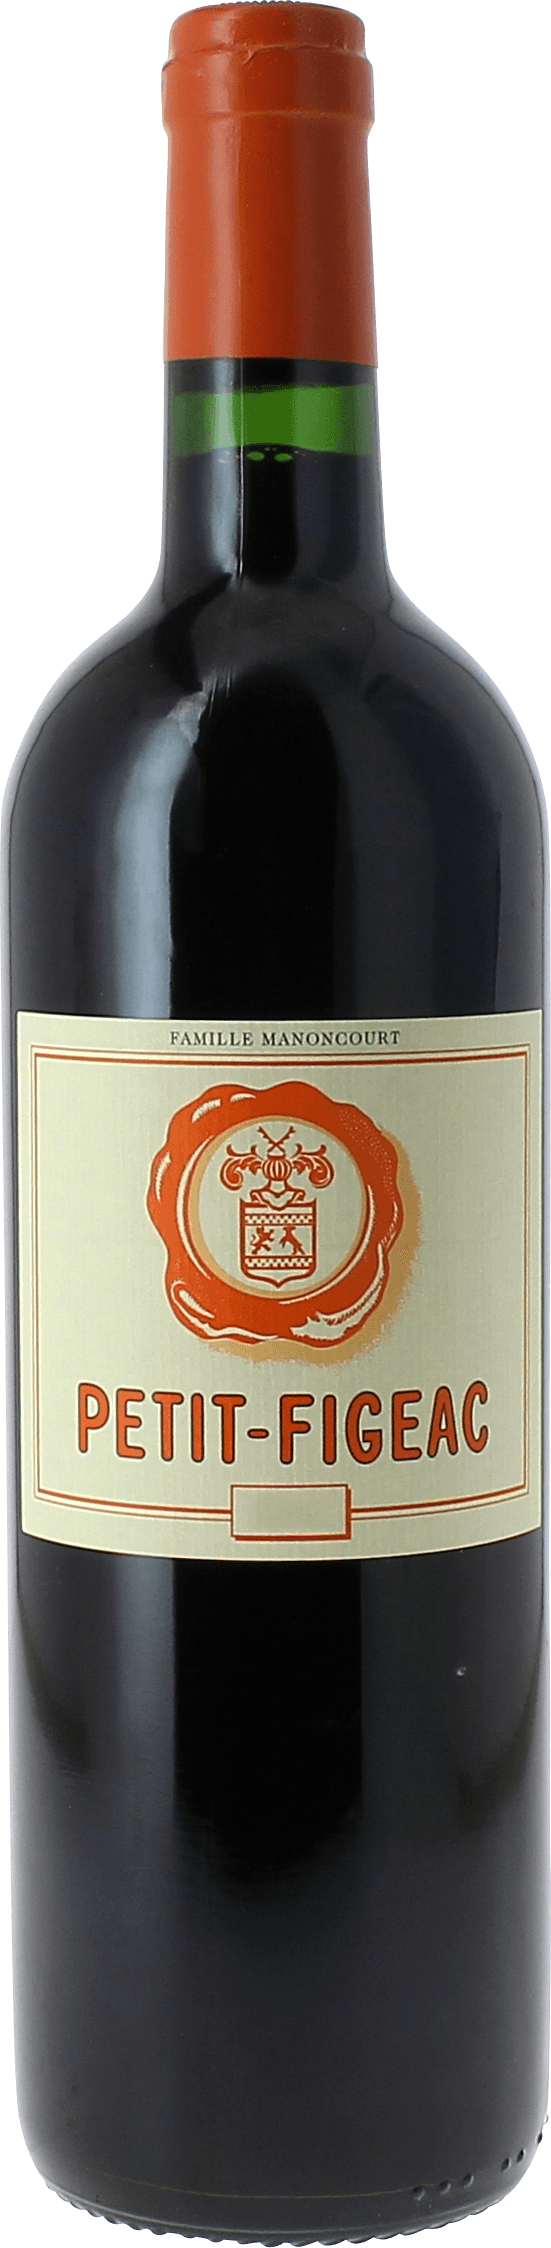 Petit figeac 2nd vin de chteau figeac 2012  Saint-Emilion, Bordeaux rouge